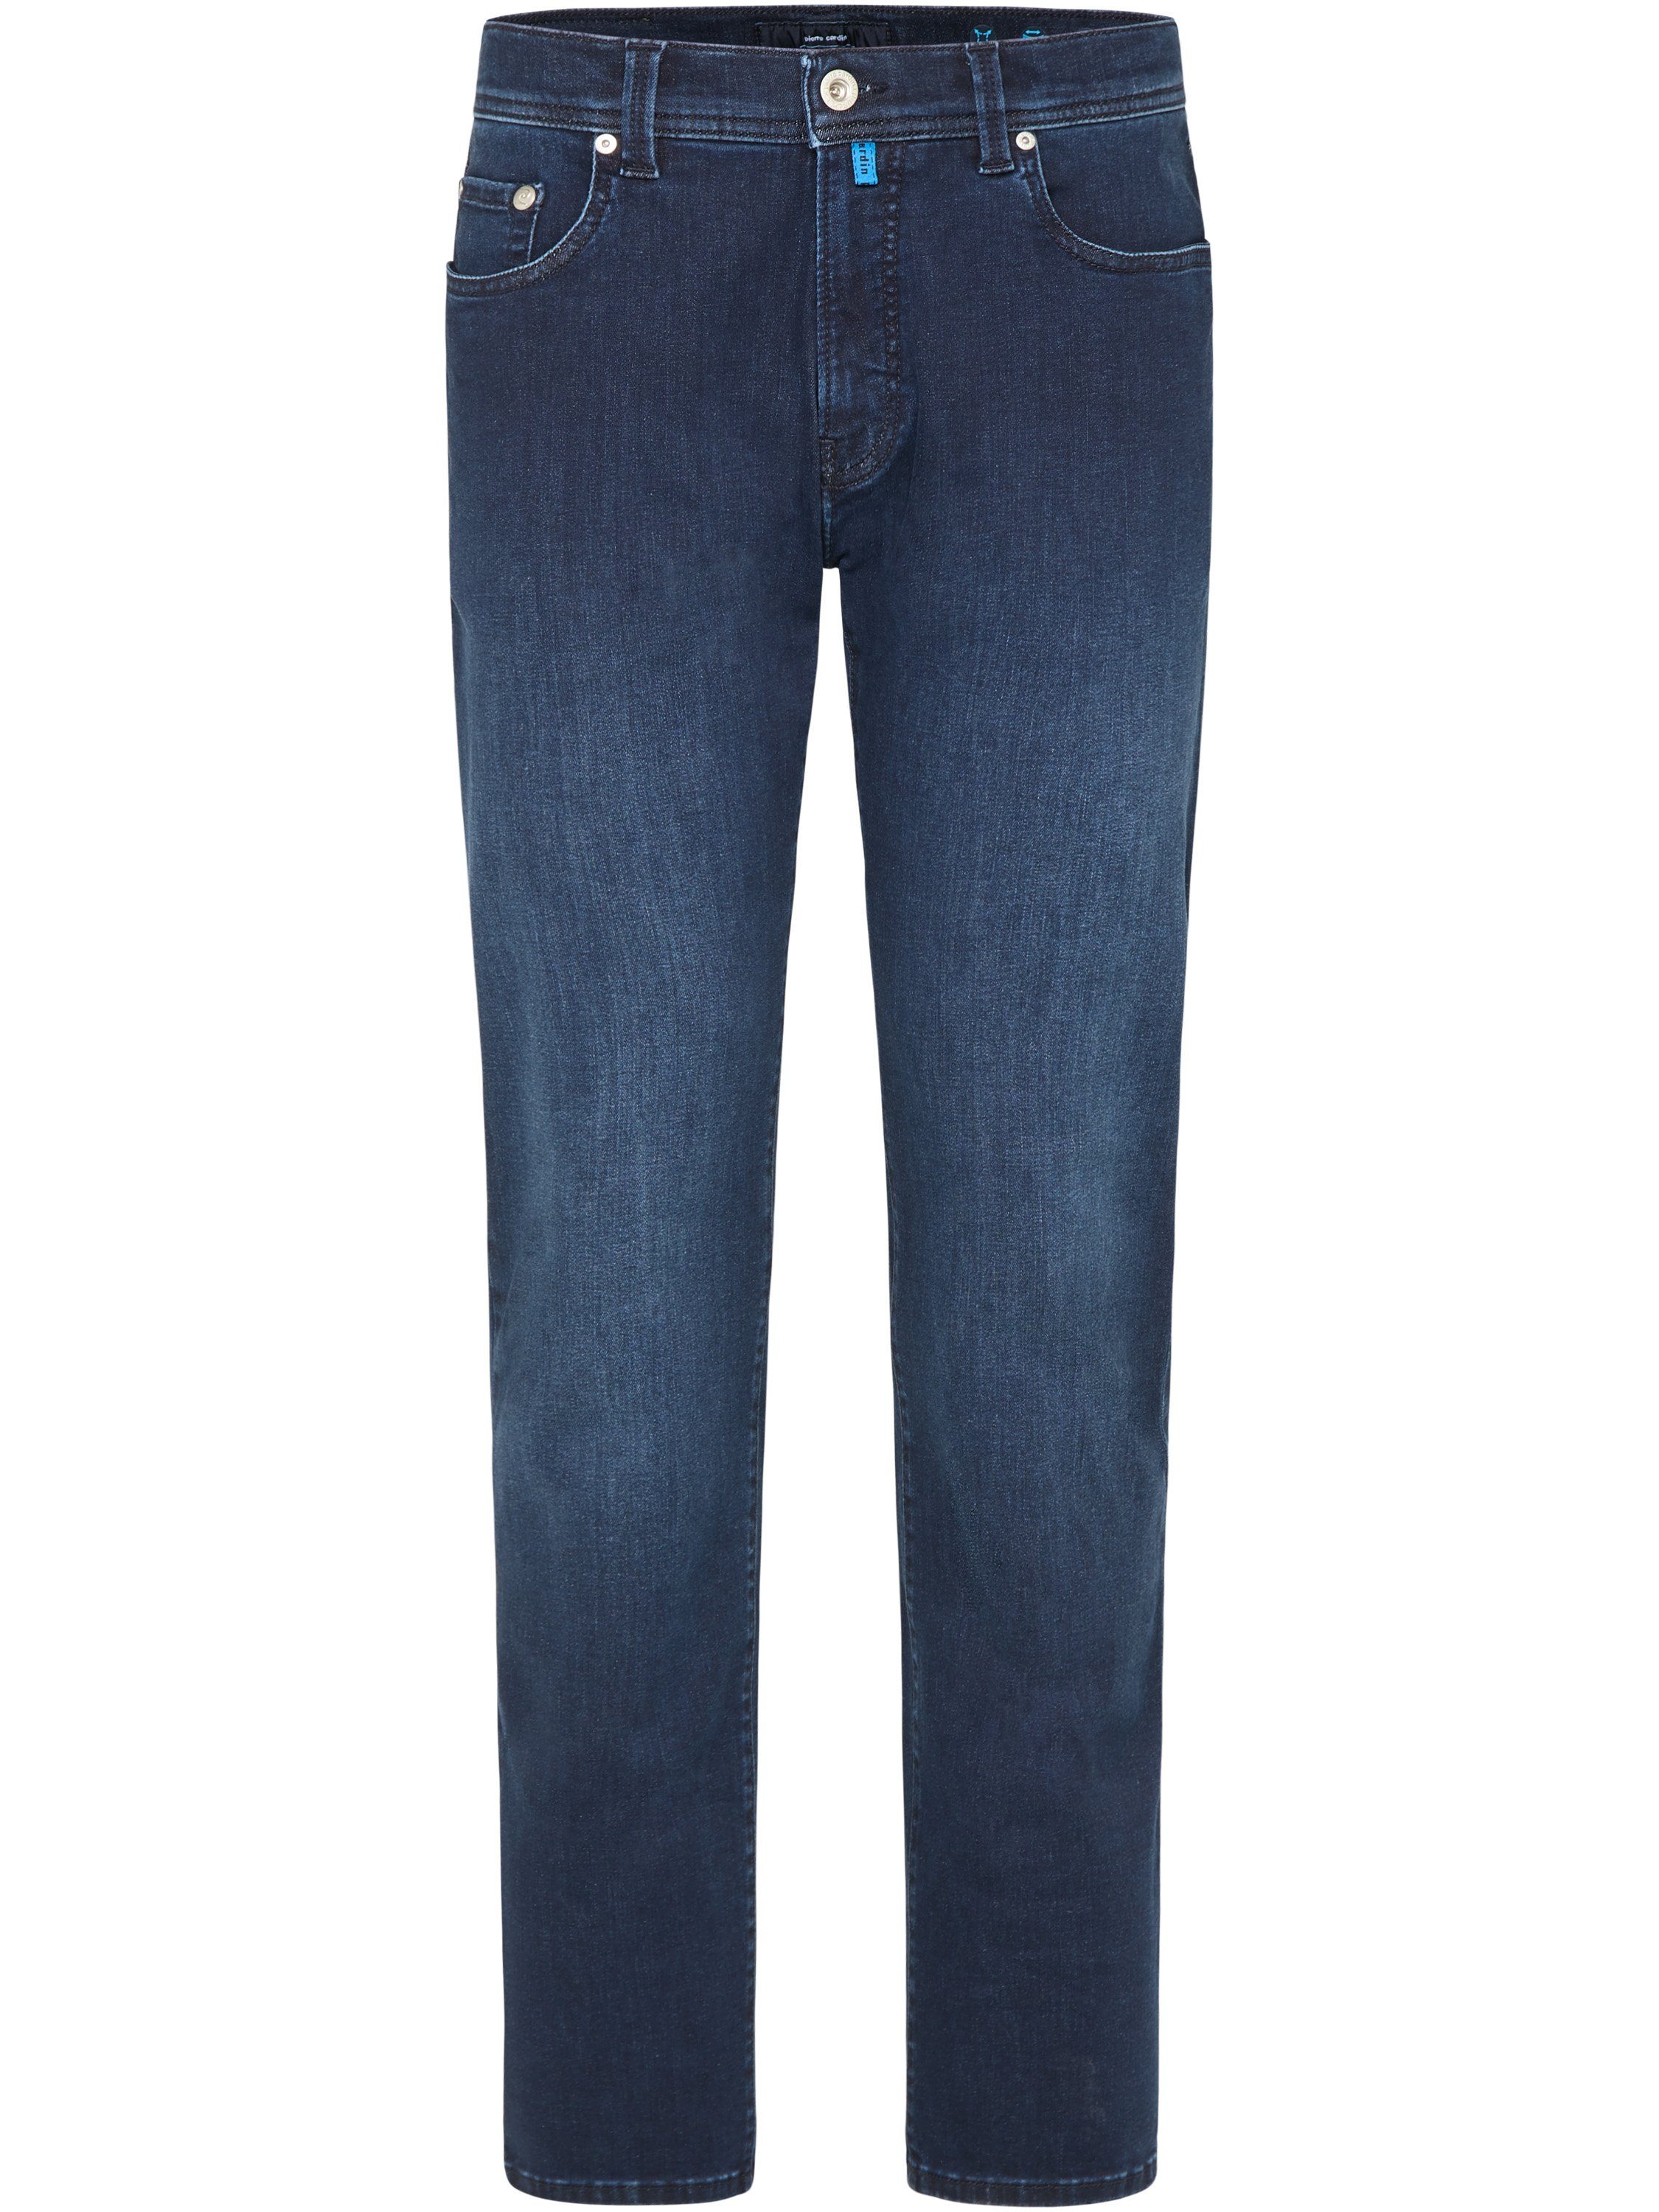 Pierre Cardin 5-Pocket-Jeans PIERRE CARDIN FUTUREFLEX LYON rinsed midnight blue 3451 8820.03